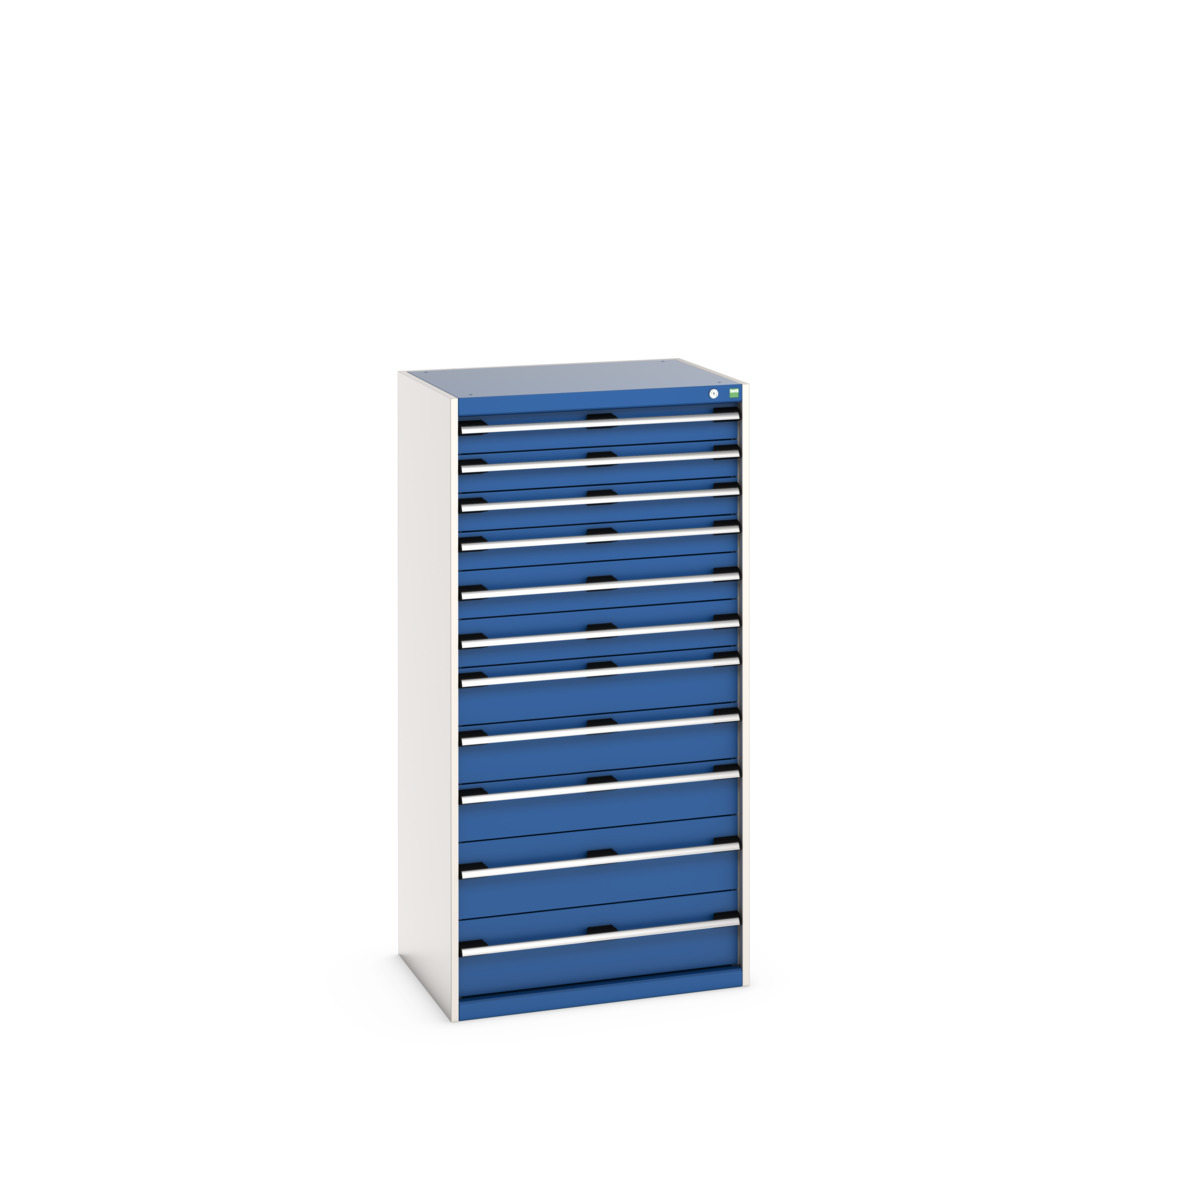 40020070.11V - cubio drawer cabinet